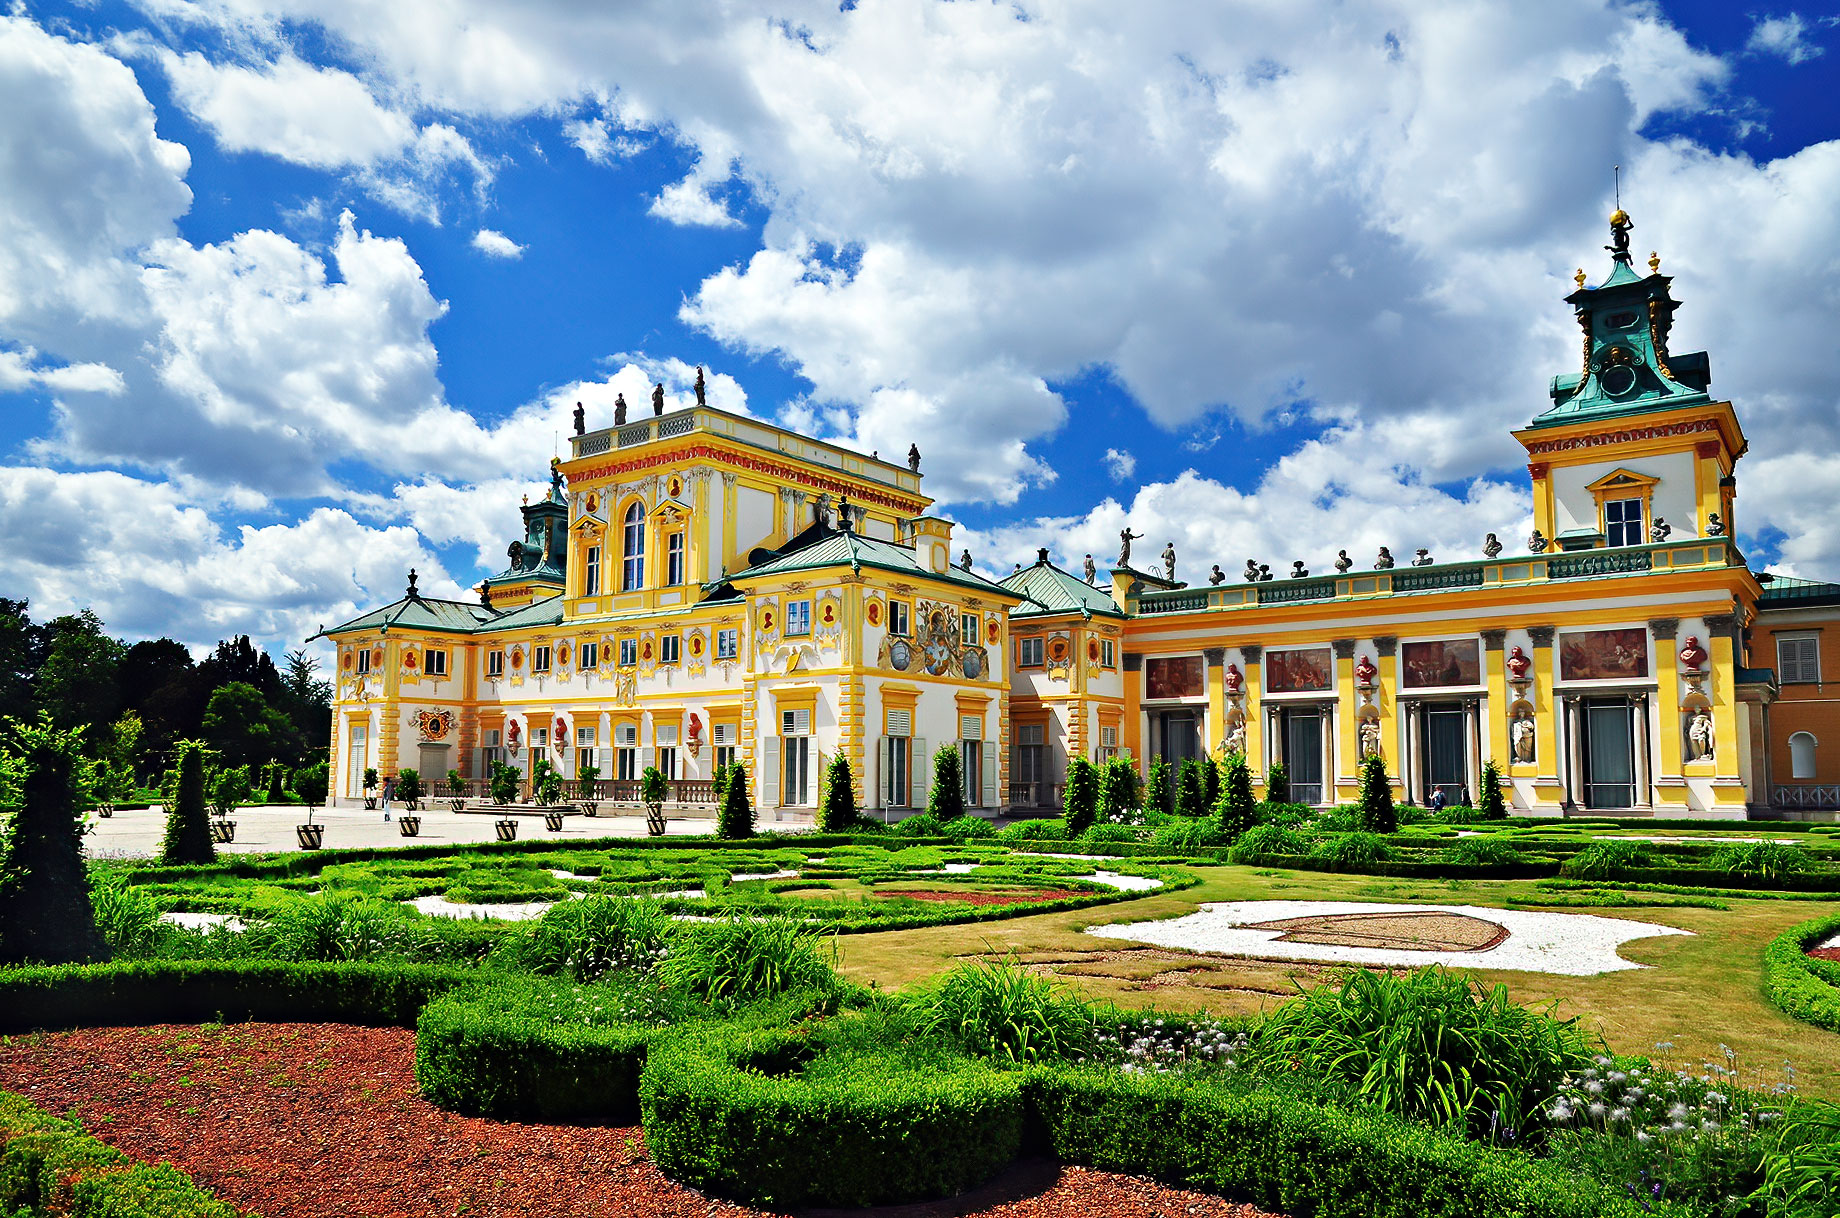 Wilanów Palace - Warsaw, Poland